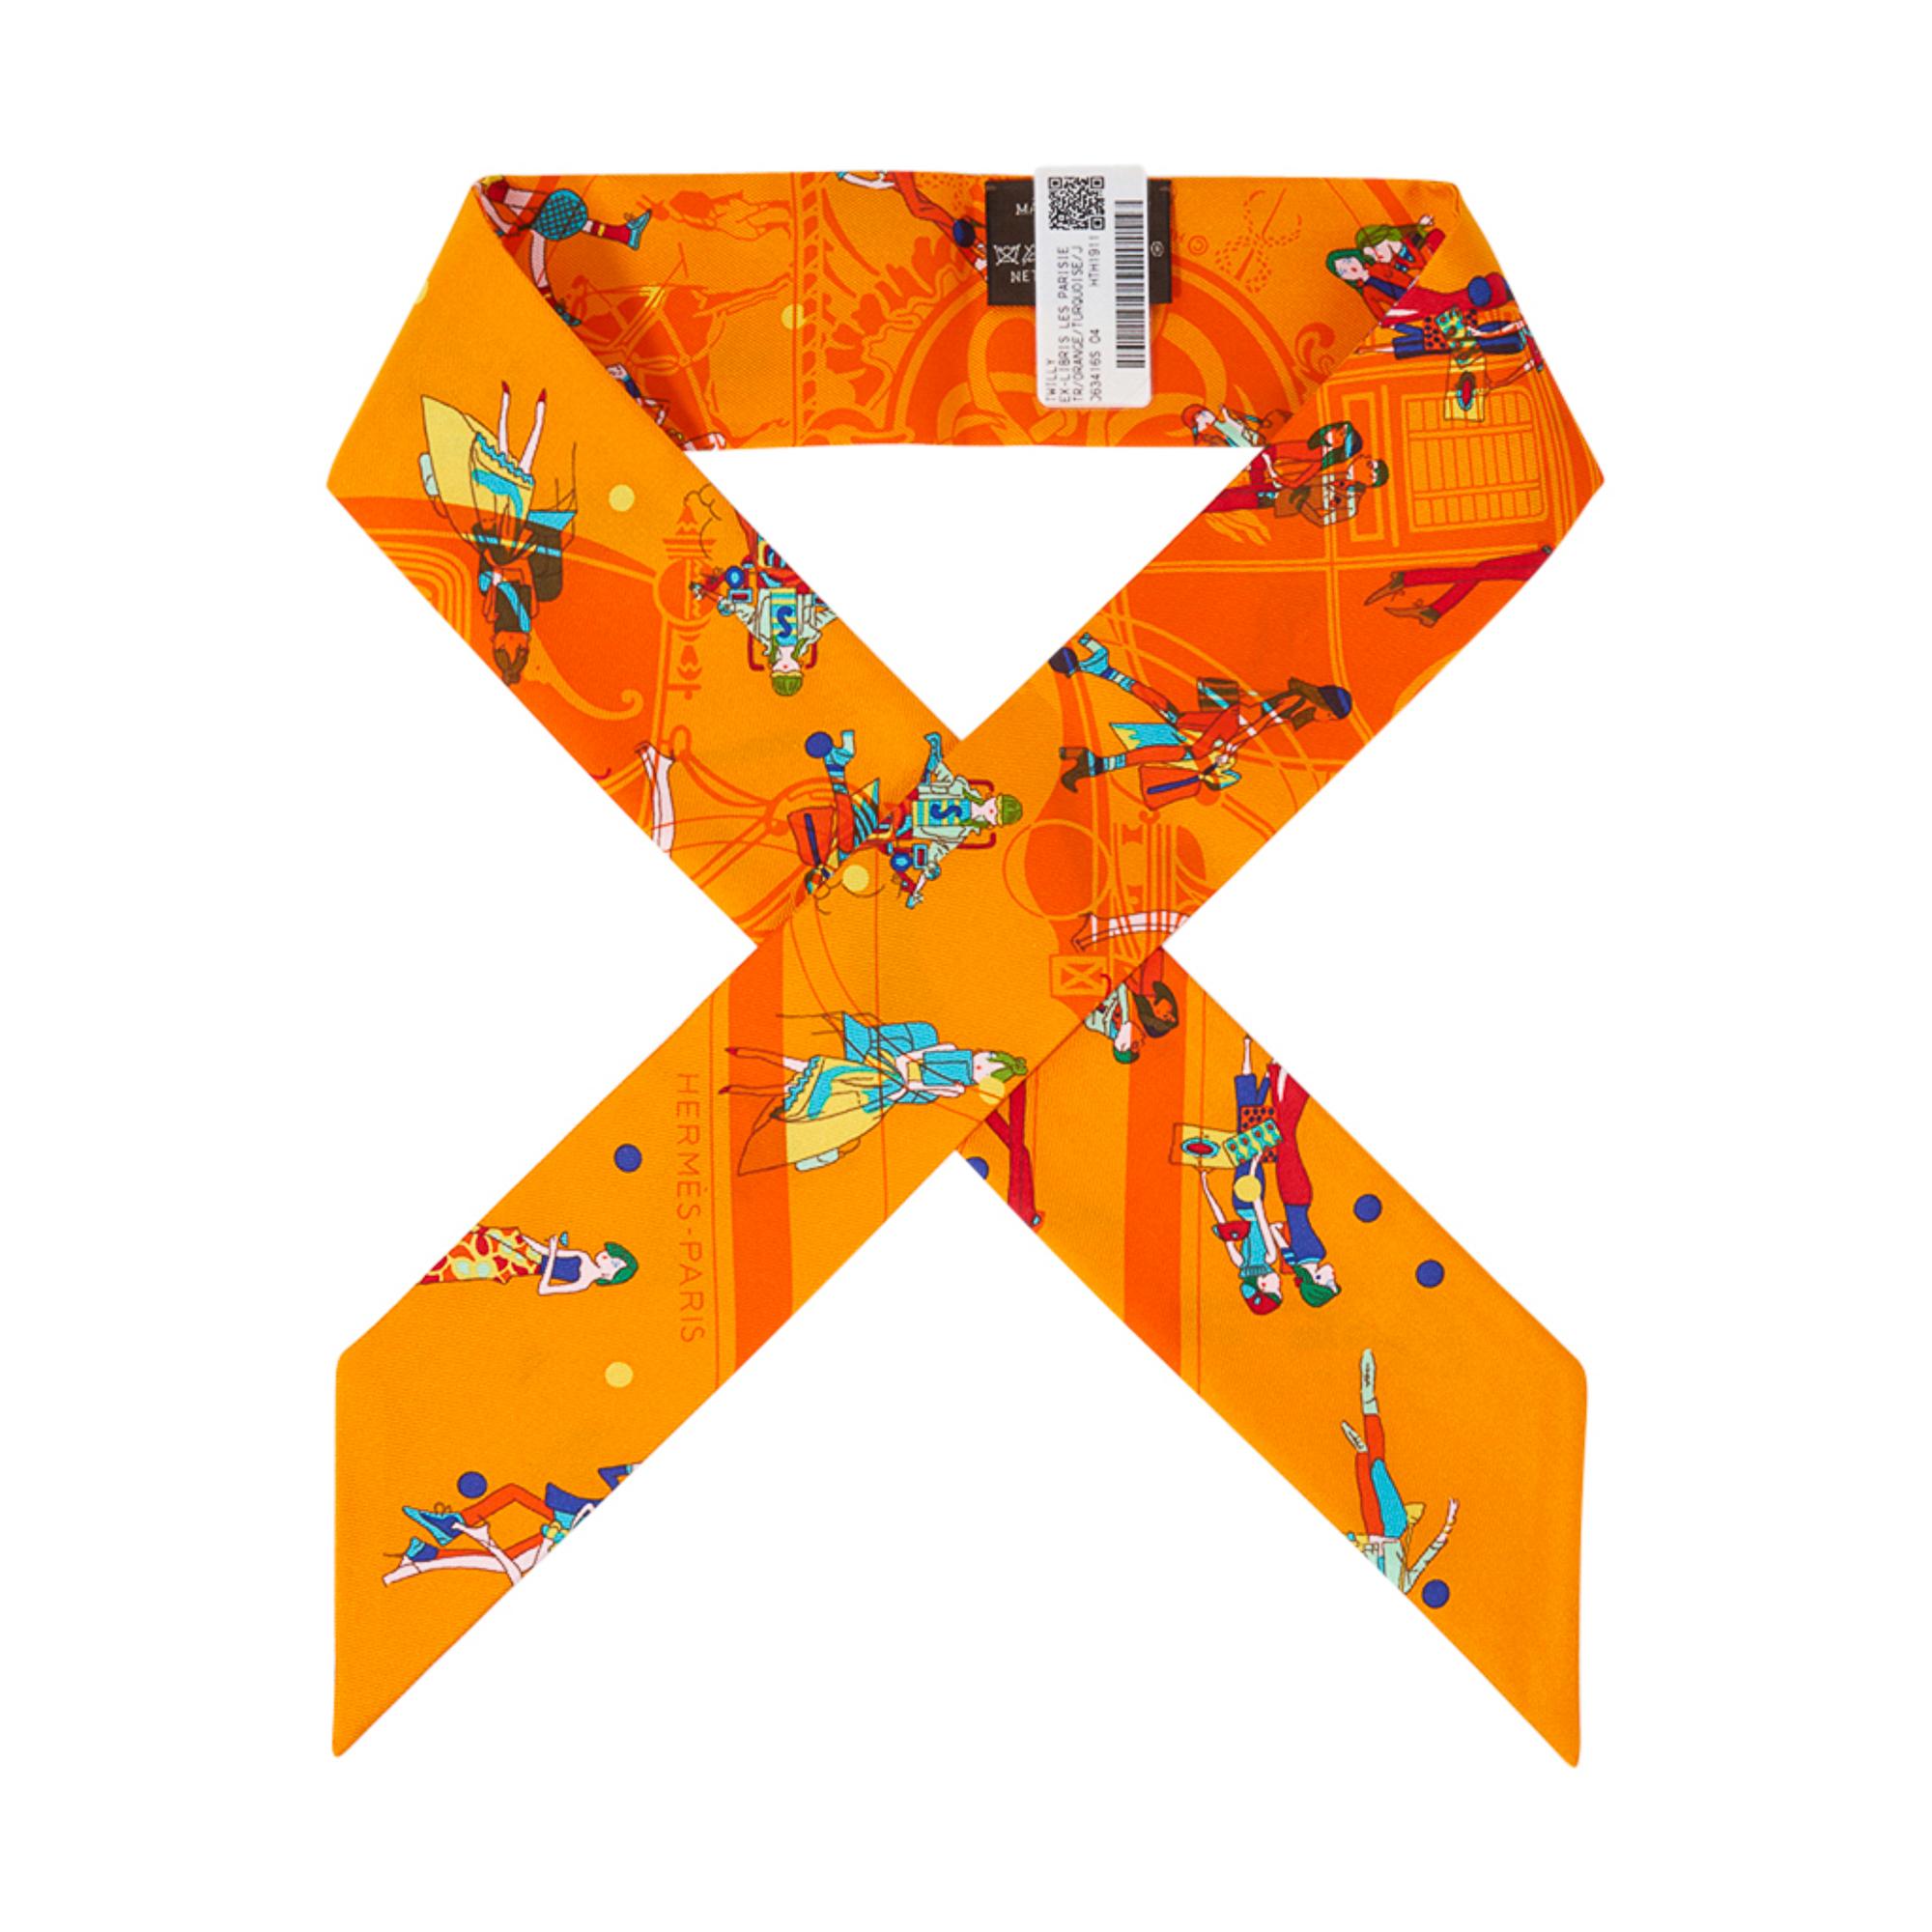 Hermes Twilly Ex-Libris Les Parisiennes Orange / Turquoise / Jaune Set of 2  1